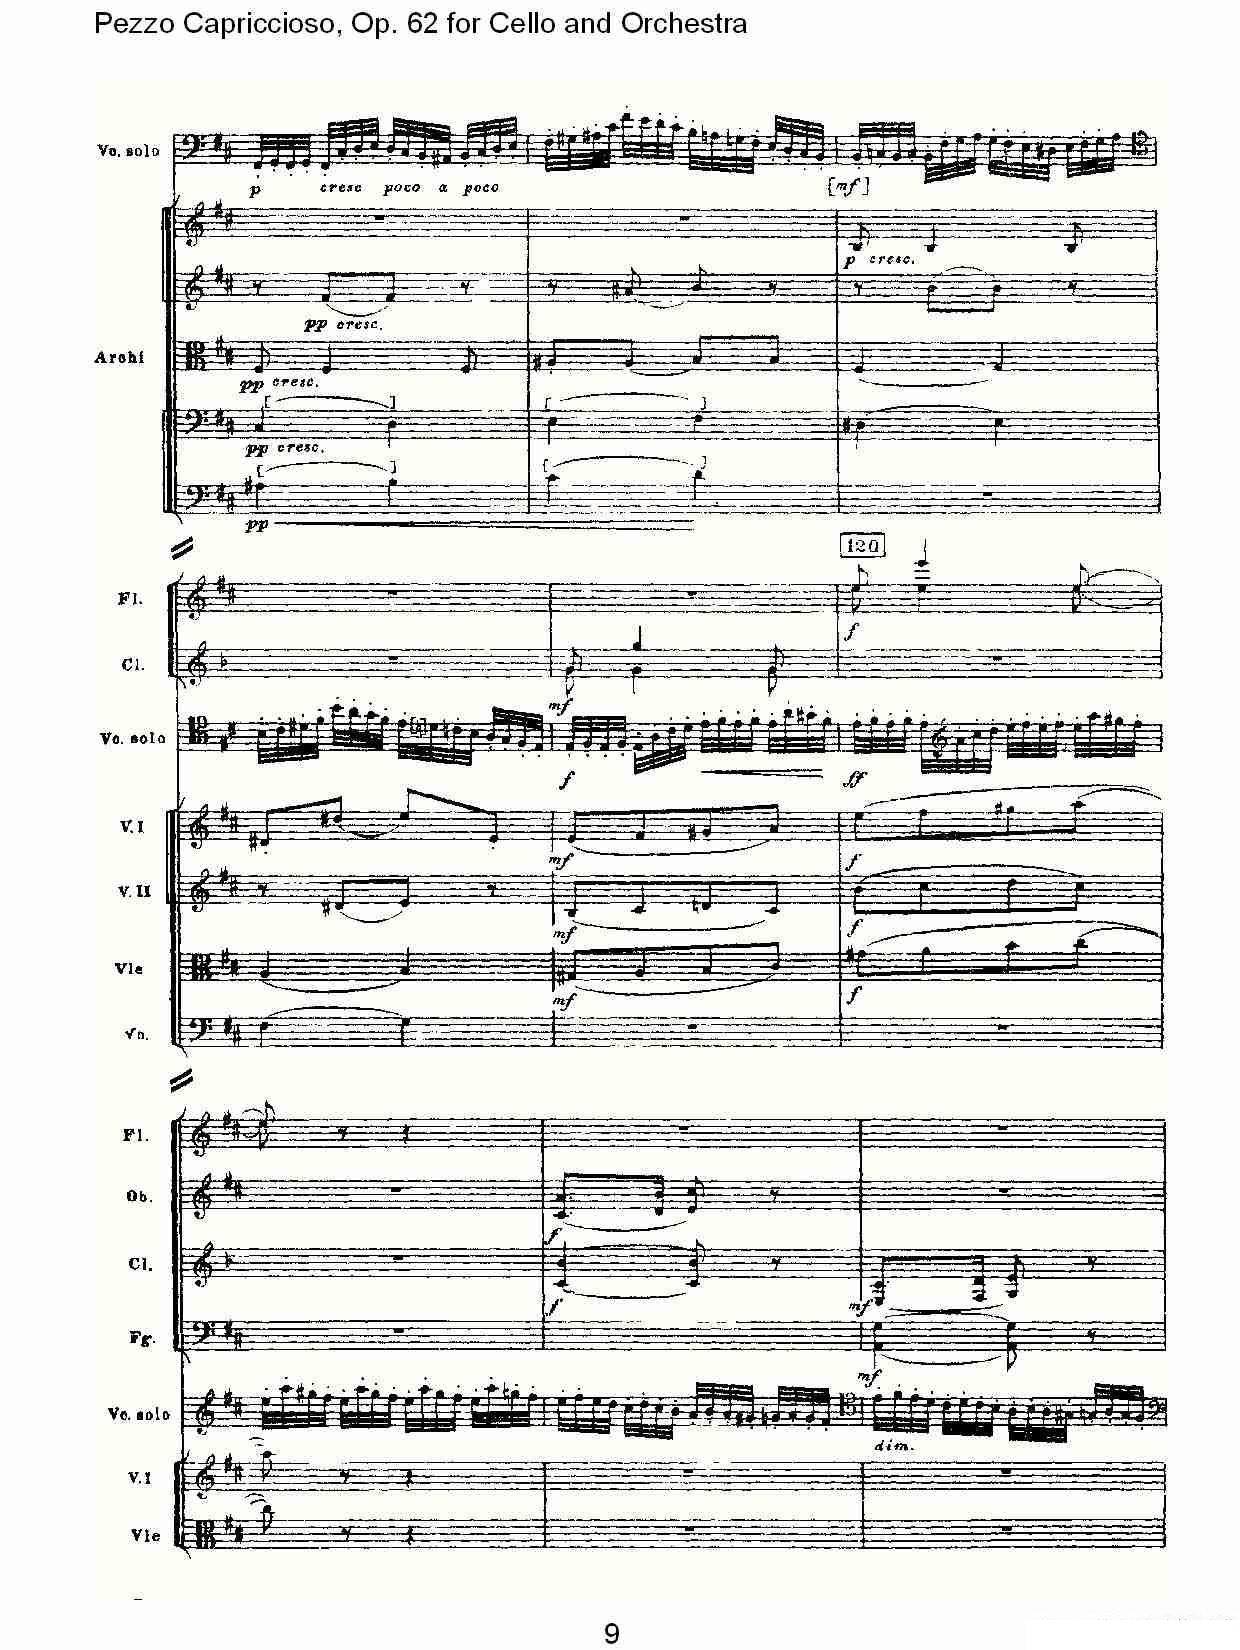 彼得·伊利奇·柴可夫斯基《Pezzo Capriccioso, Op.62》提琴谱（第9页）